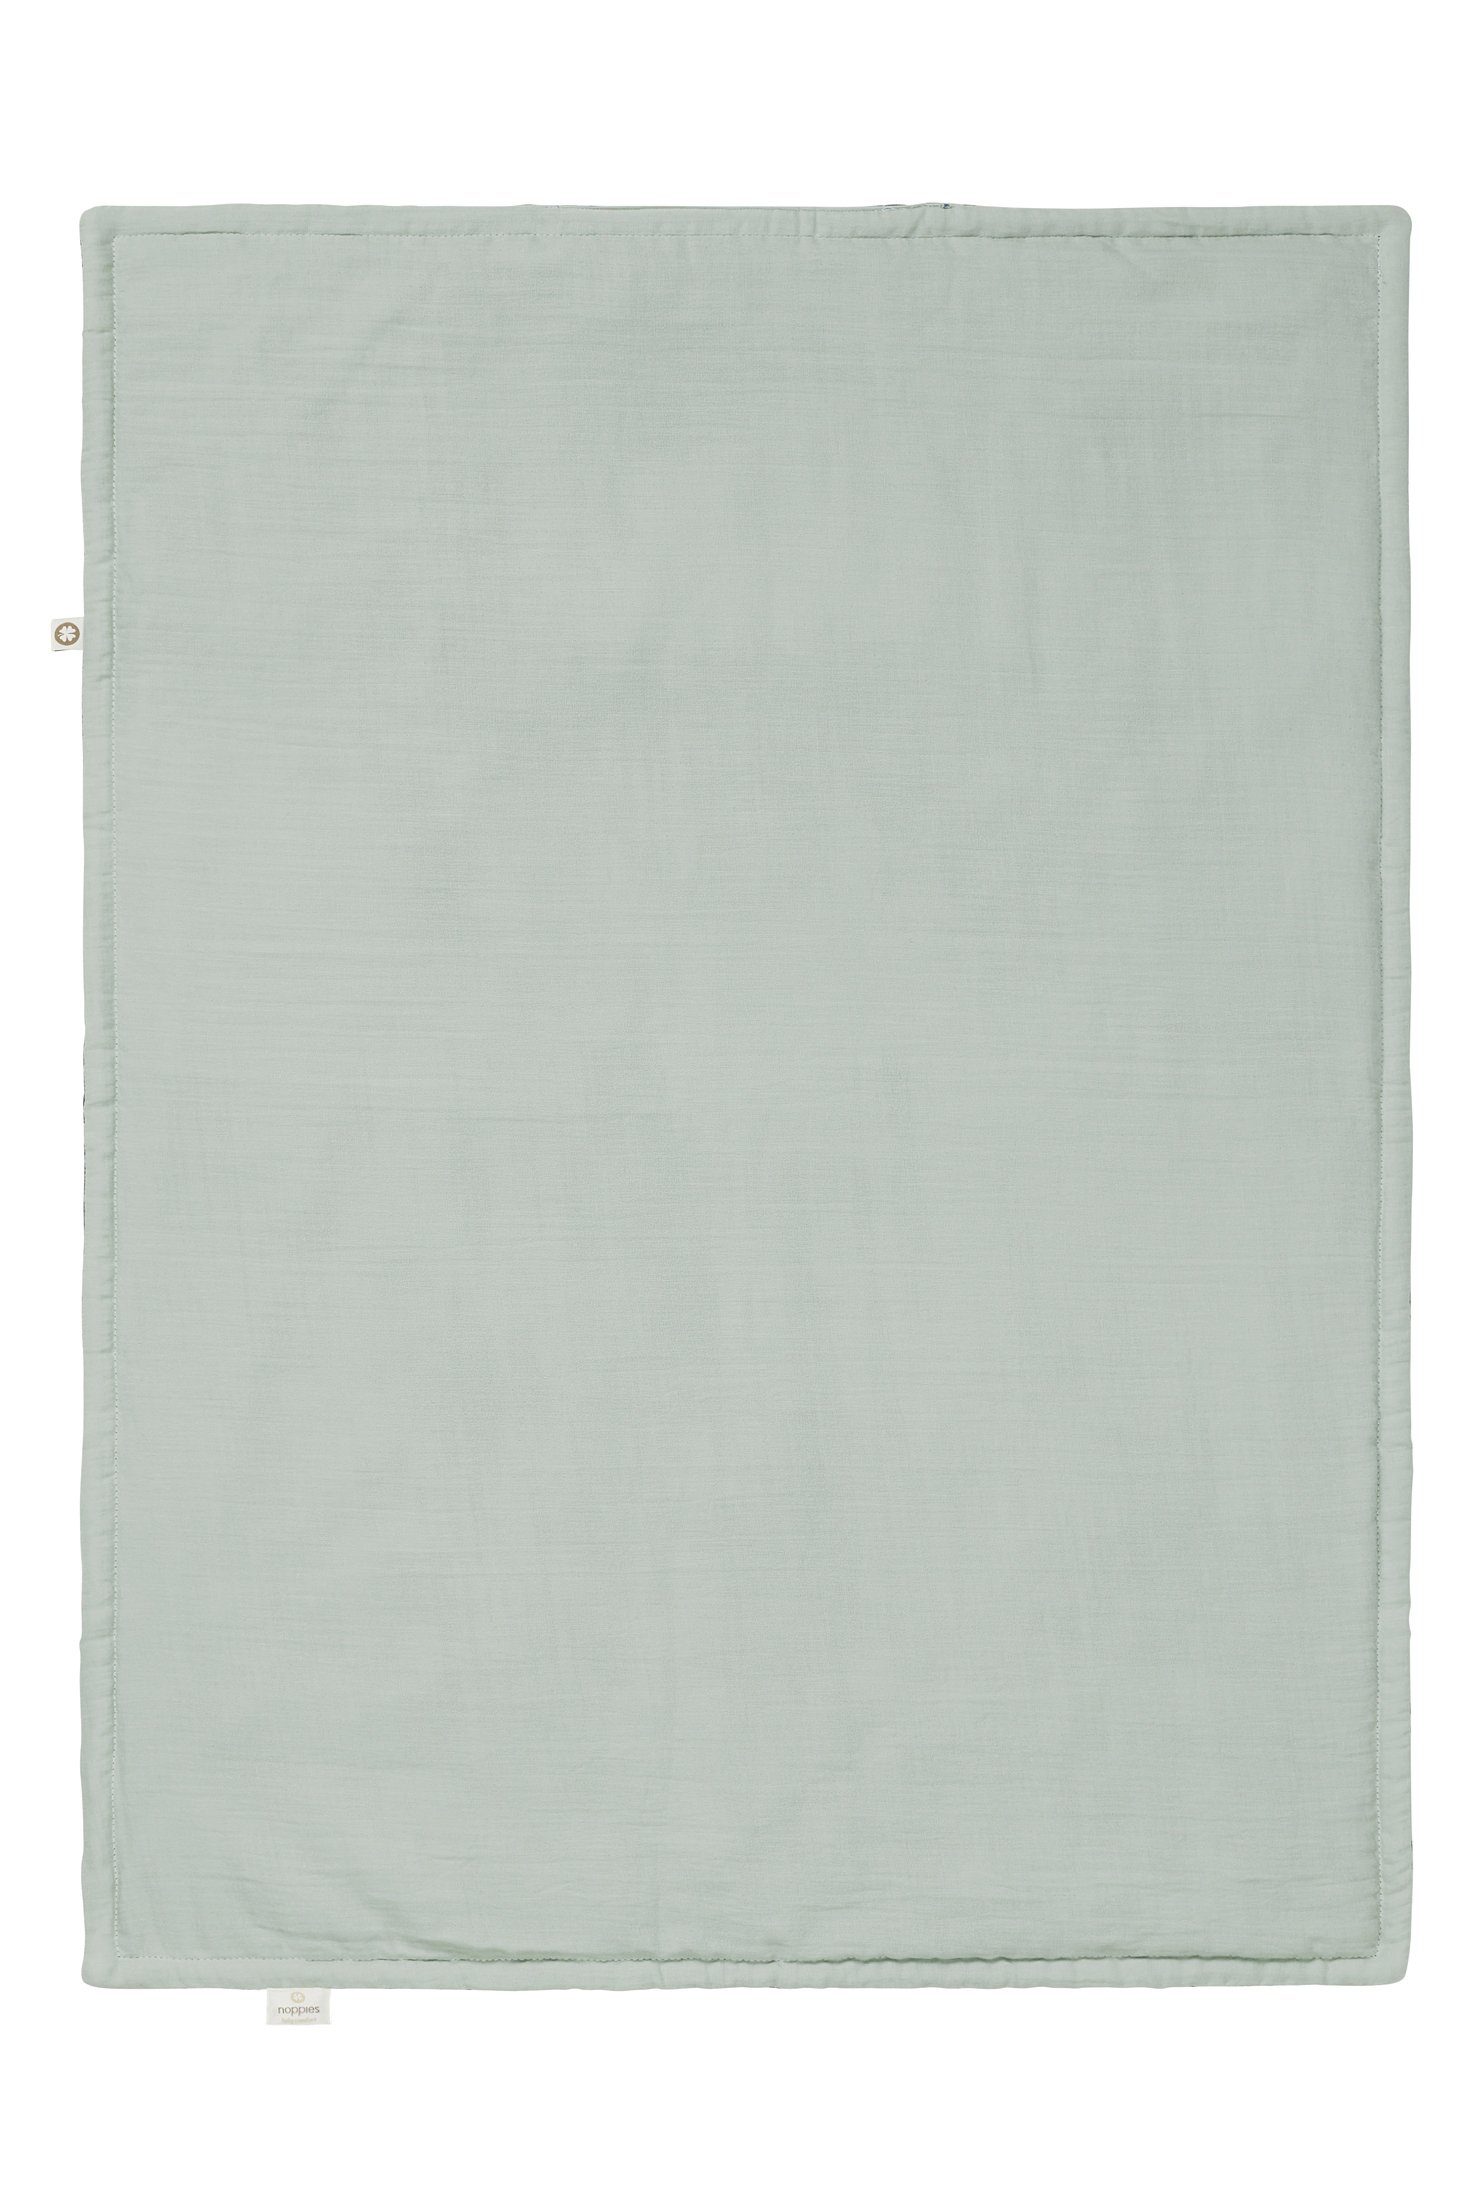 Babydecke Noppies Decke für die Filled Puritan cm, Wiege Noppies Gray 75x100